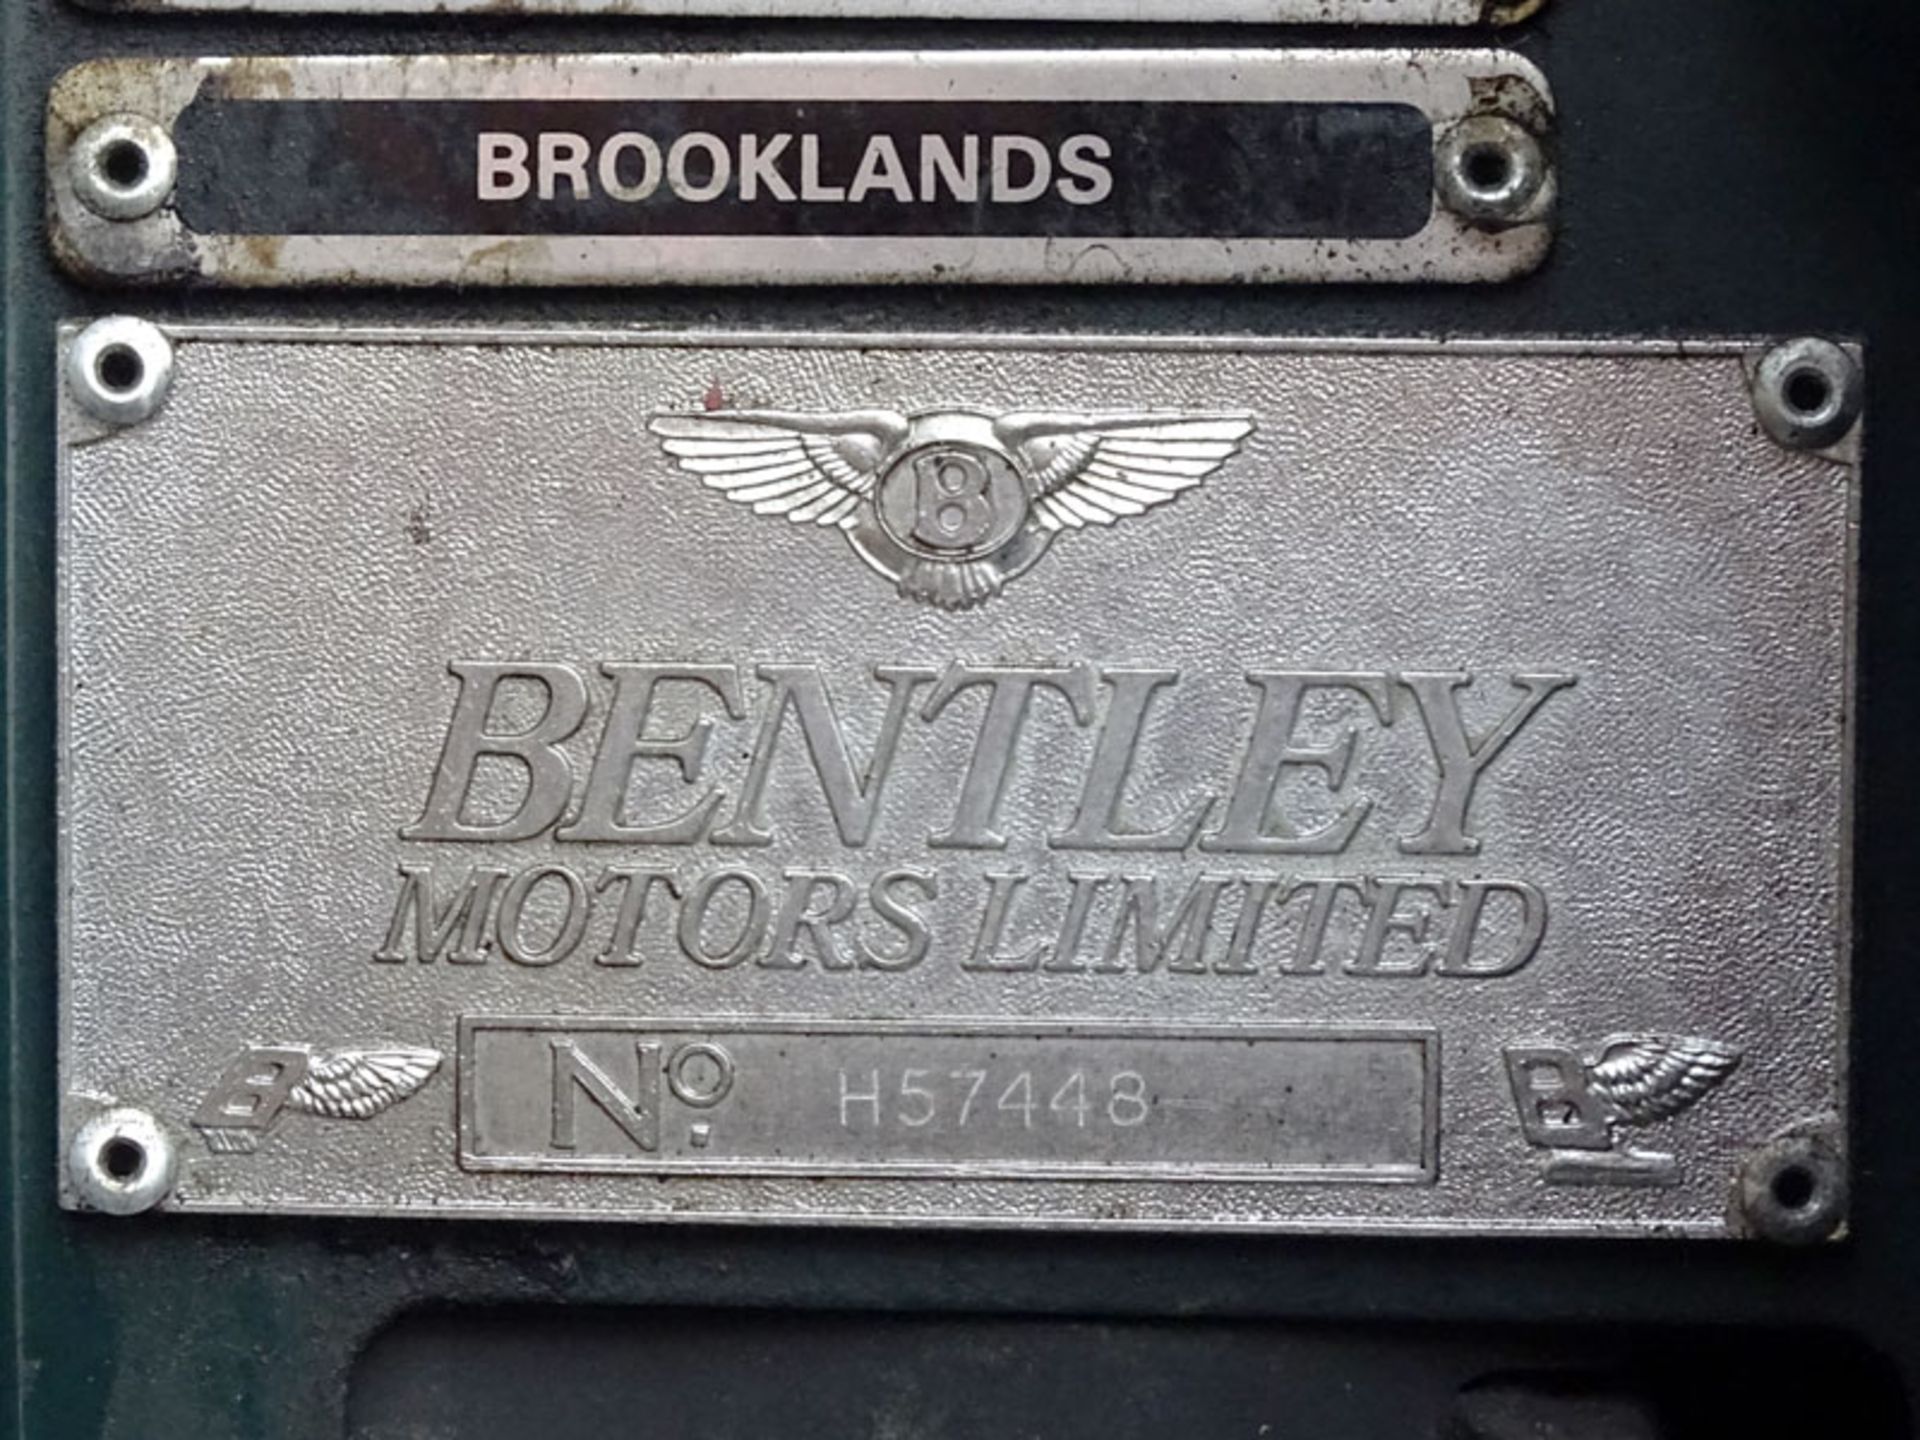 1995 Bentley Brooklands - Image 9 of 9